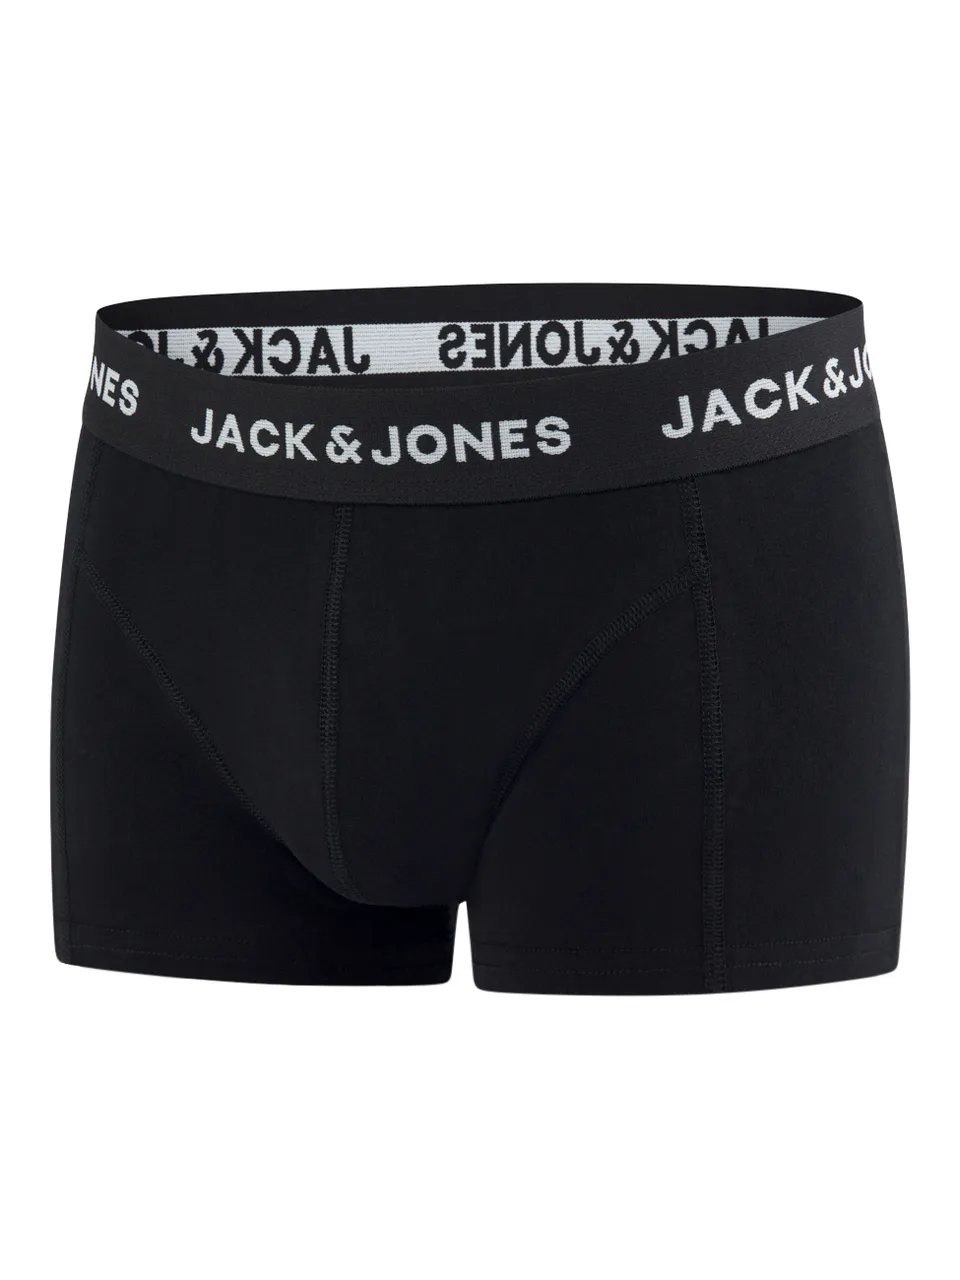 Jack & Jones Boxershorts Herren 6er Pack